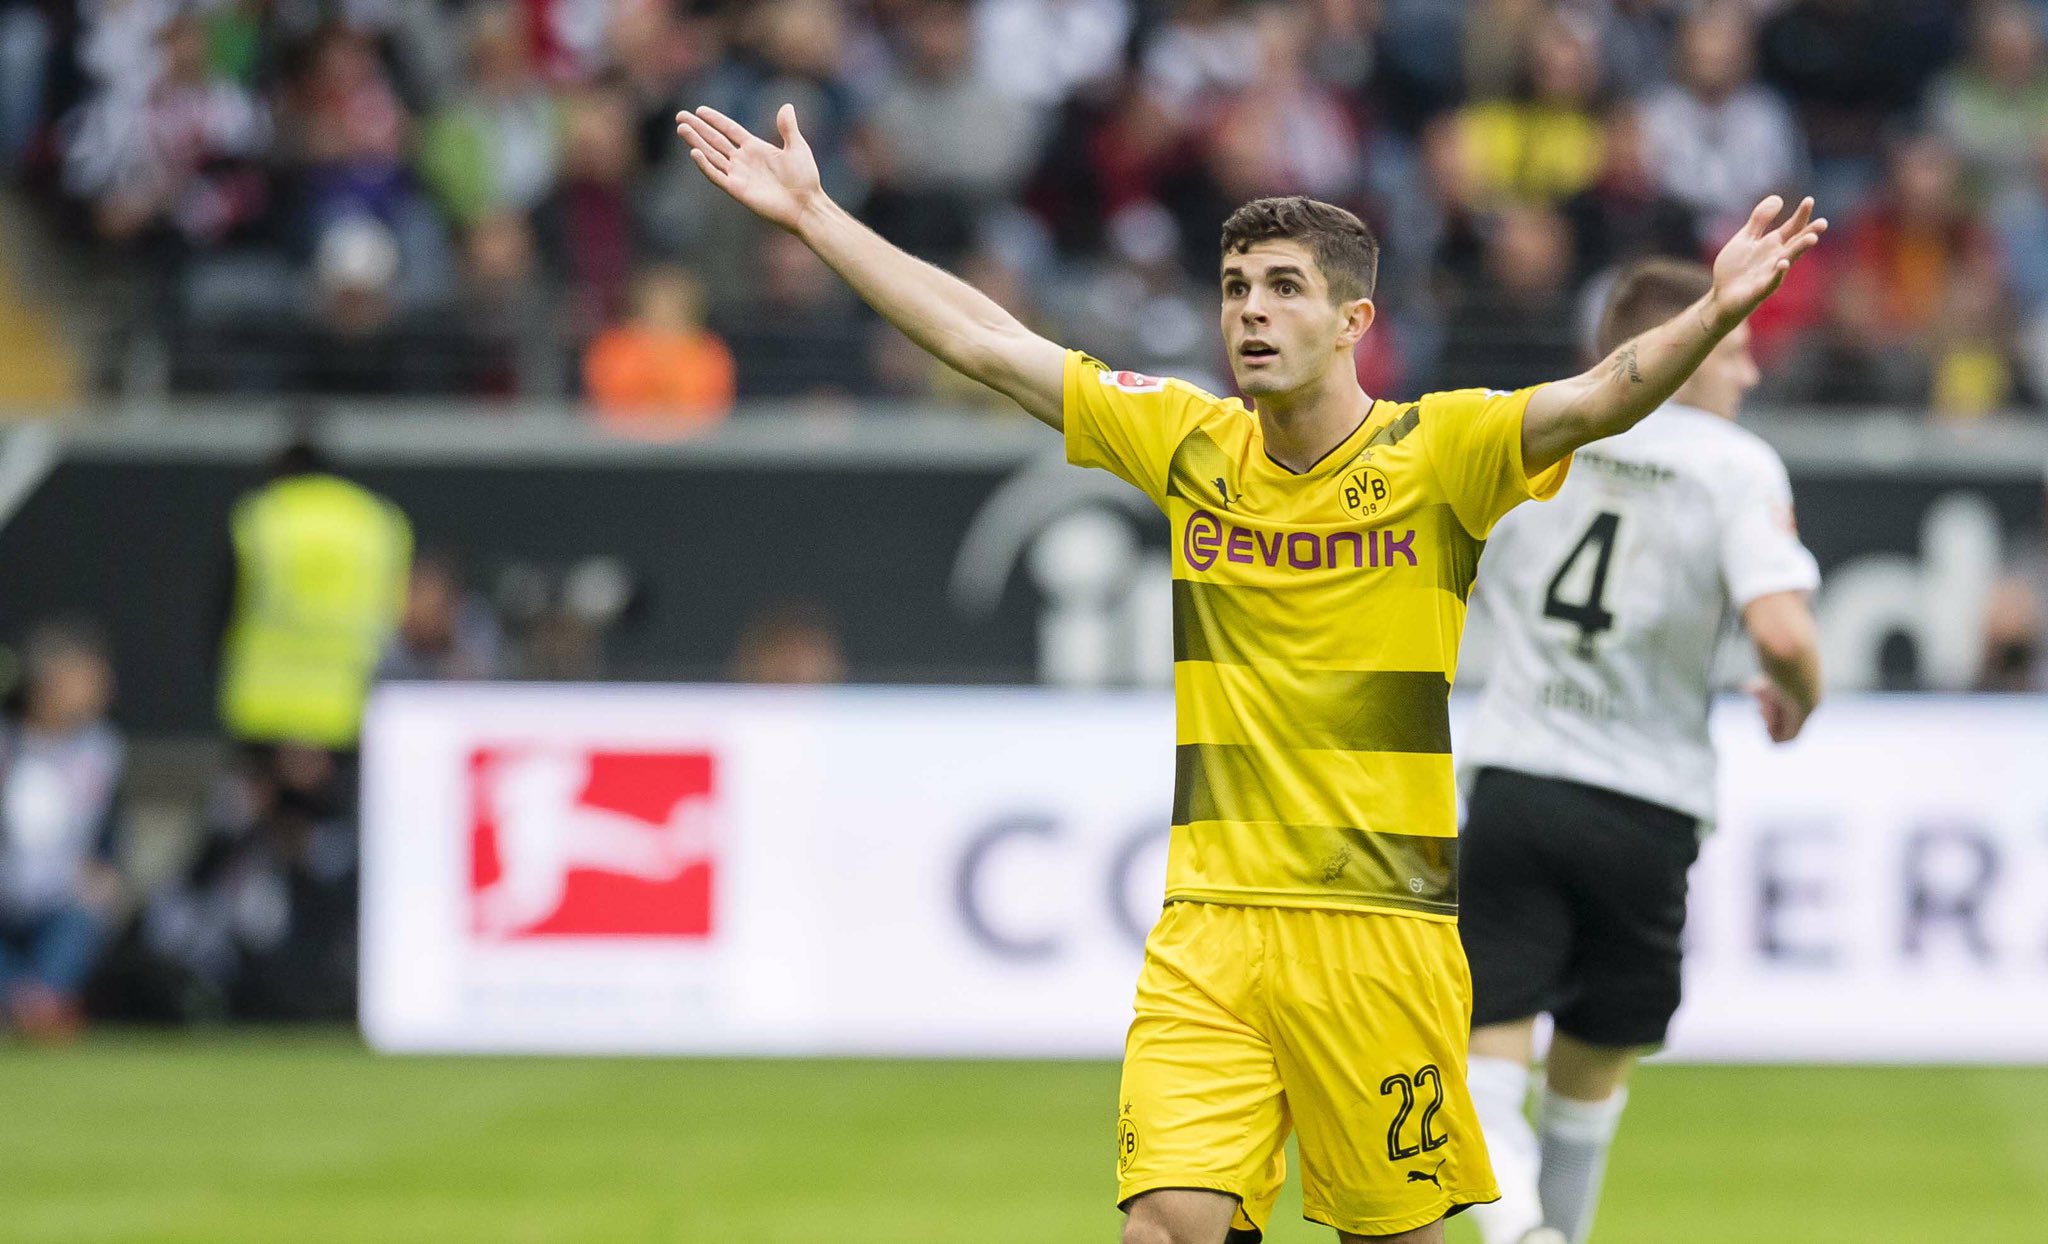 ALEMÃO: Dortmund abre vantagem, mas vacila e só empata com o Frankfurt